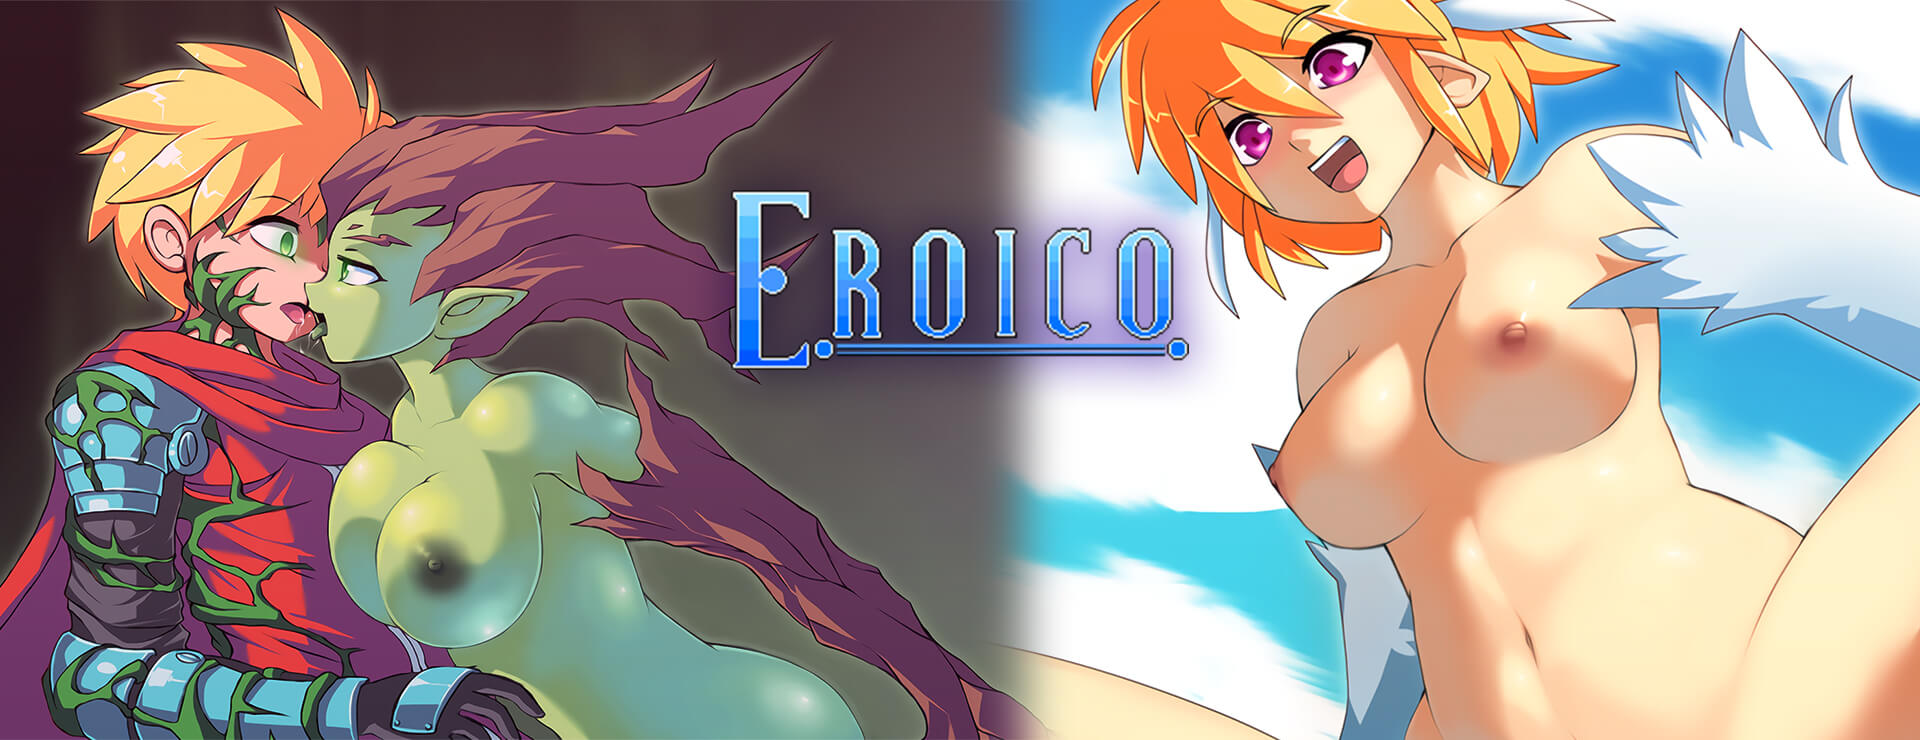 Eroico - Przygodowa akcji Gra